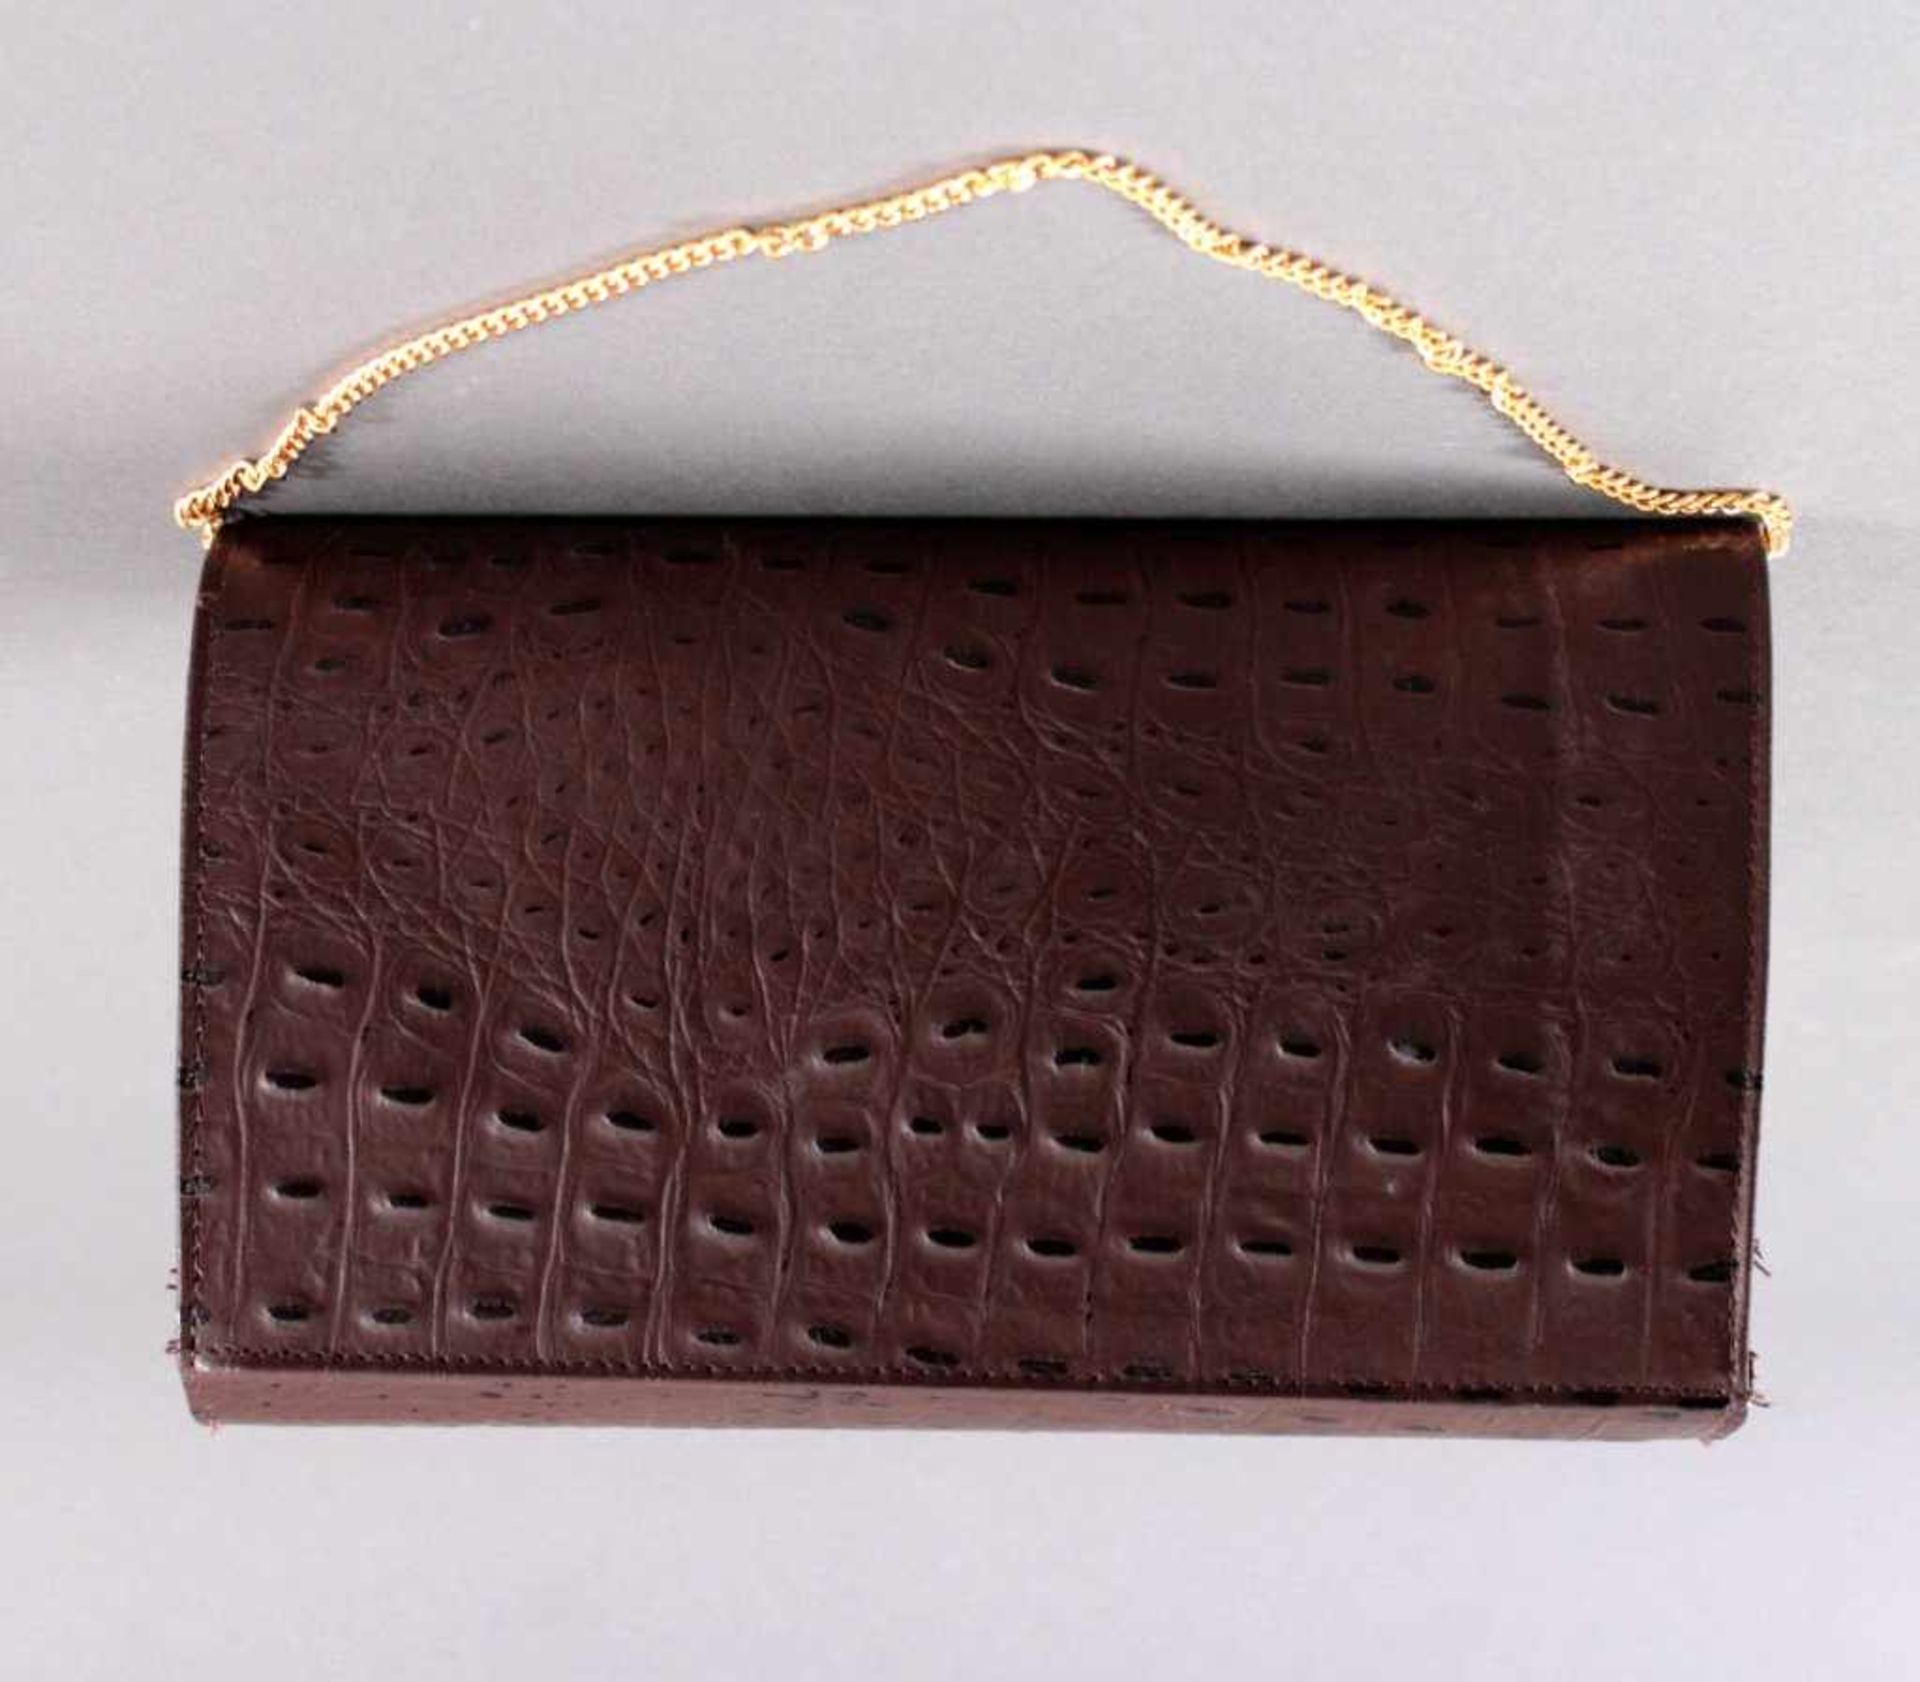 Krokodilleder-TascheDamenhandtasche aus Krokodilleder, braun, mit KrokodilEmblem kleinem - Bild 2 aus 3